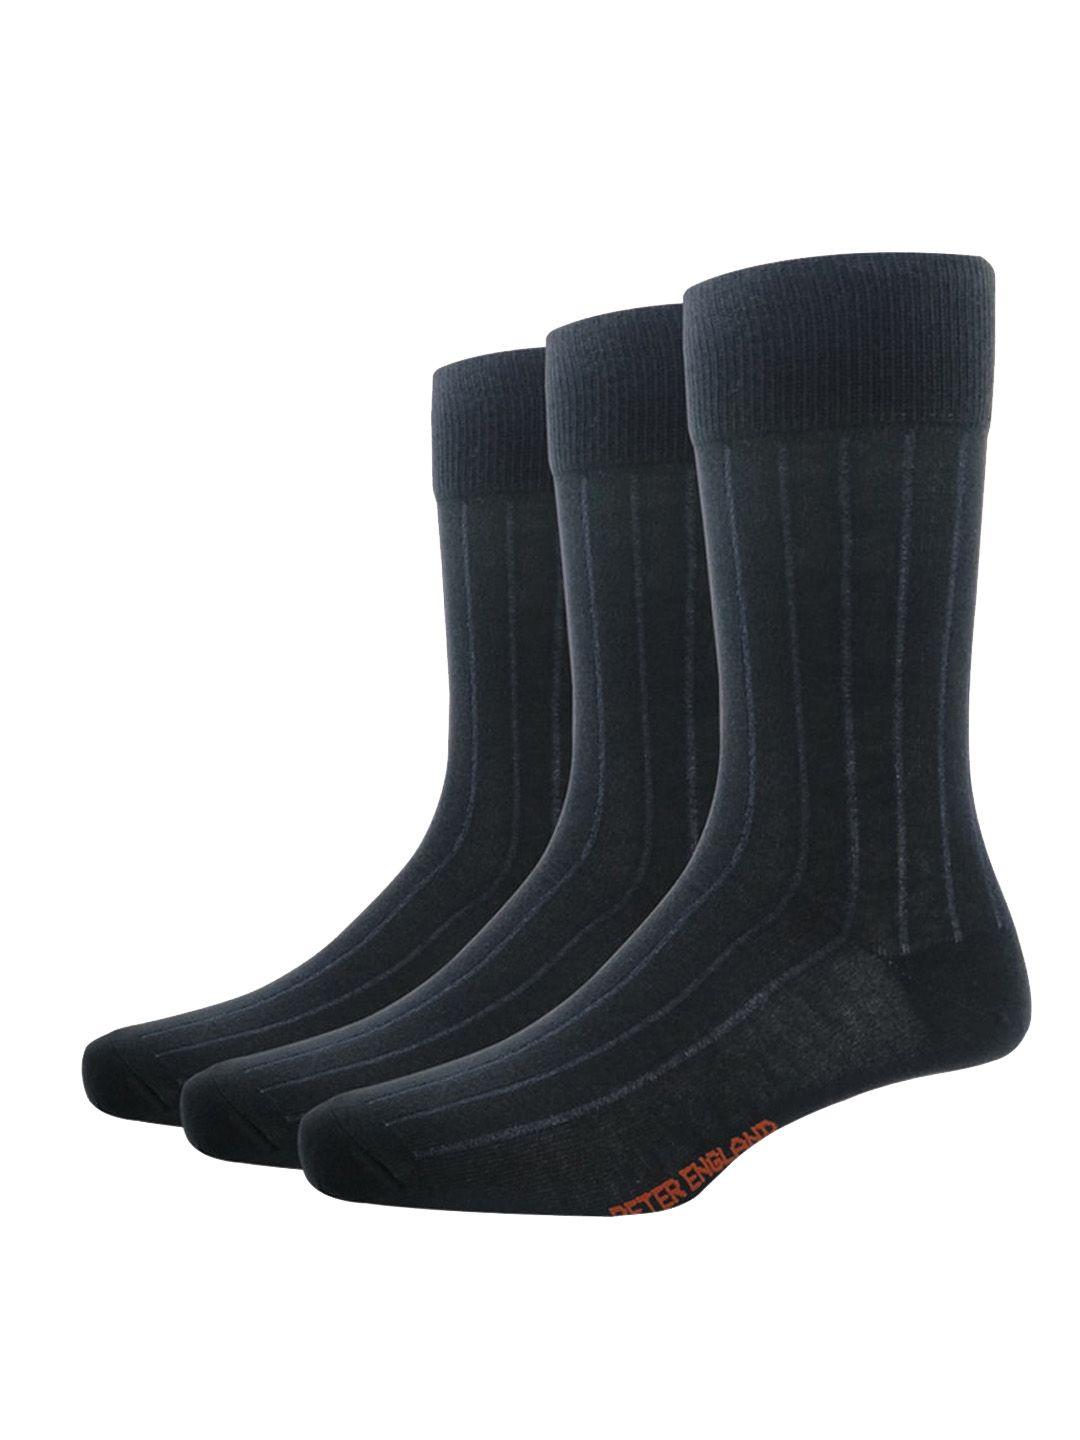 peter-england-men-pack-of-3-black-striped-calf-length-socks